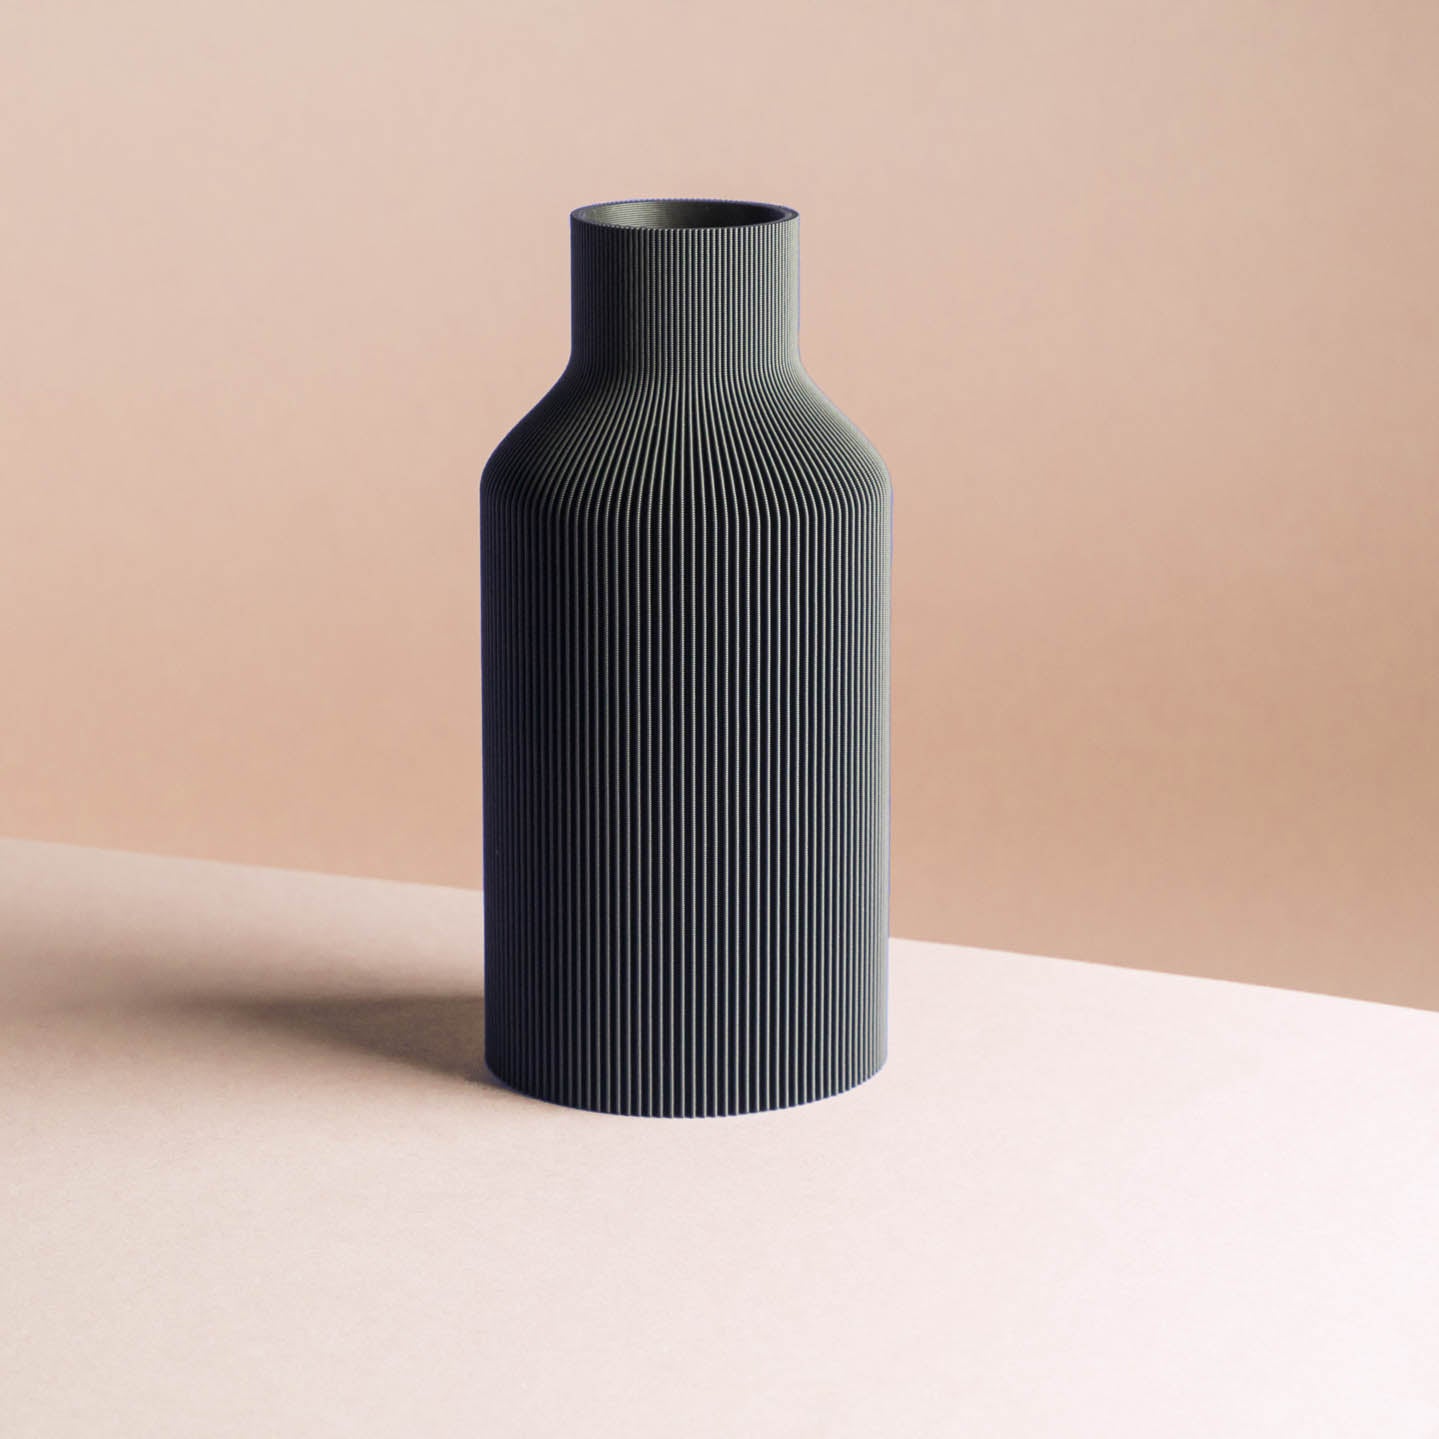 3D-Druck Vase 'Flasche' in klassischen Farben